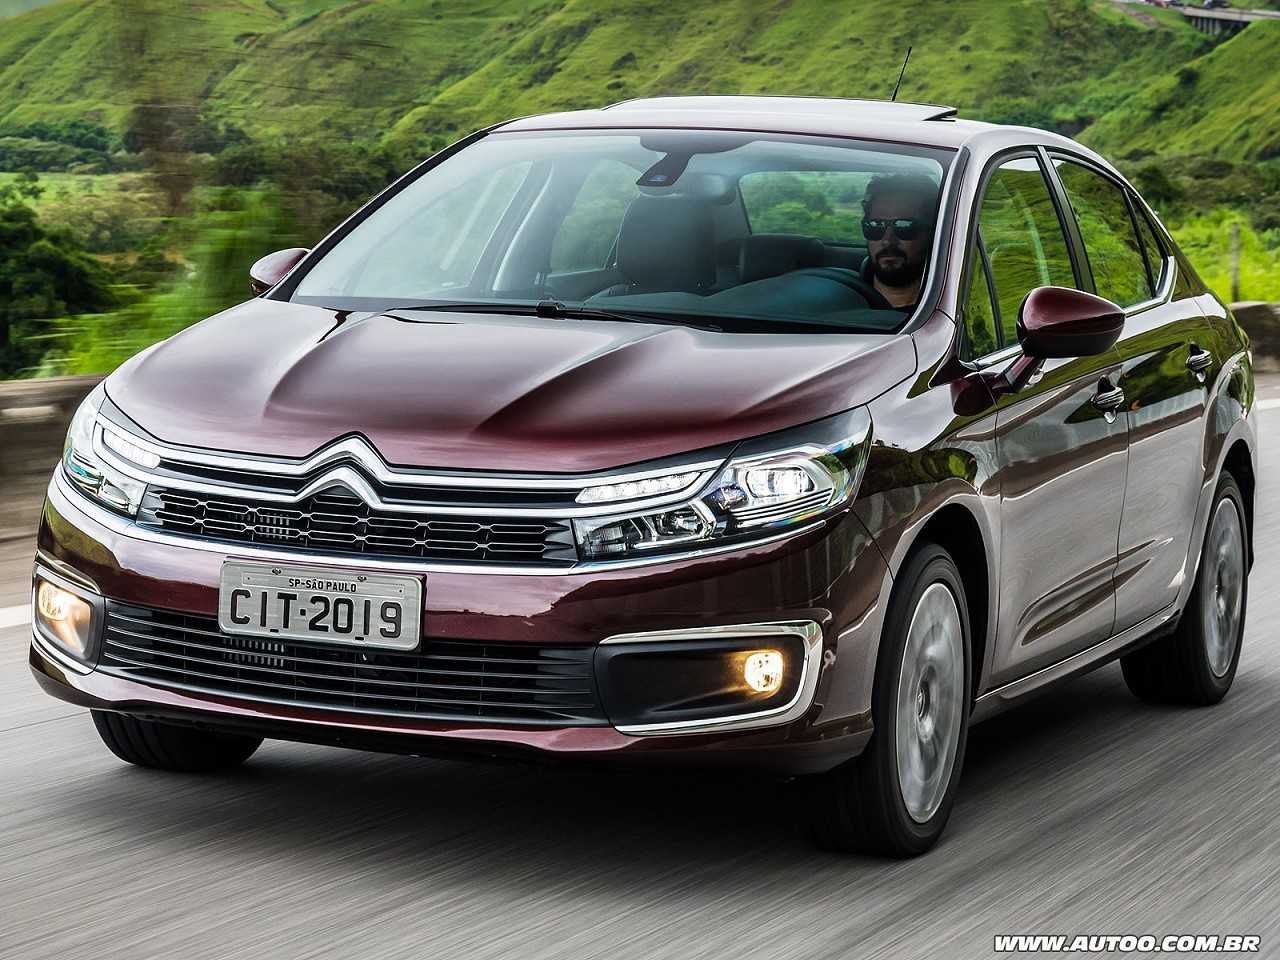 Compra PCD: um Renault Captur ou um Citroën C4 Lounge?